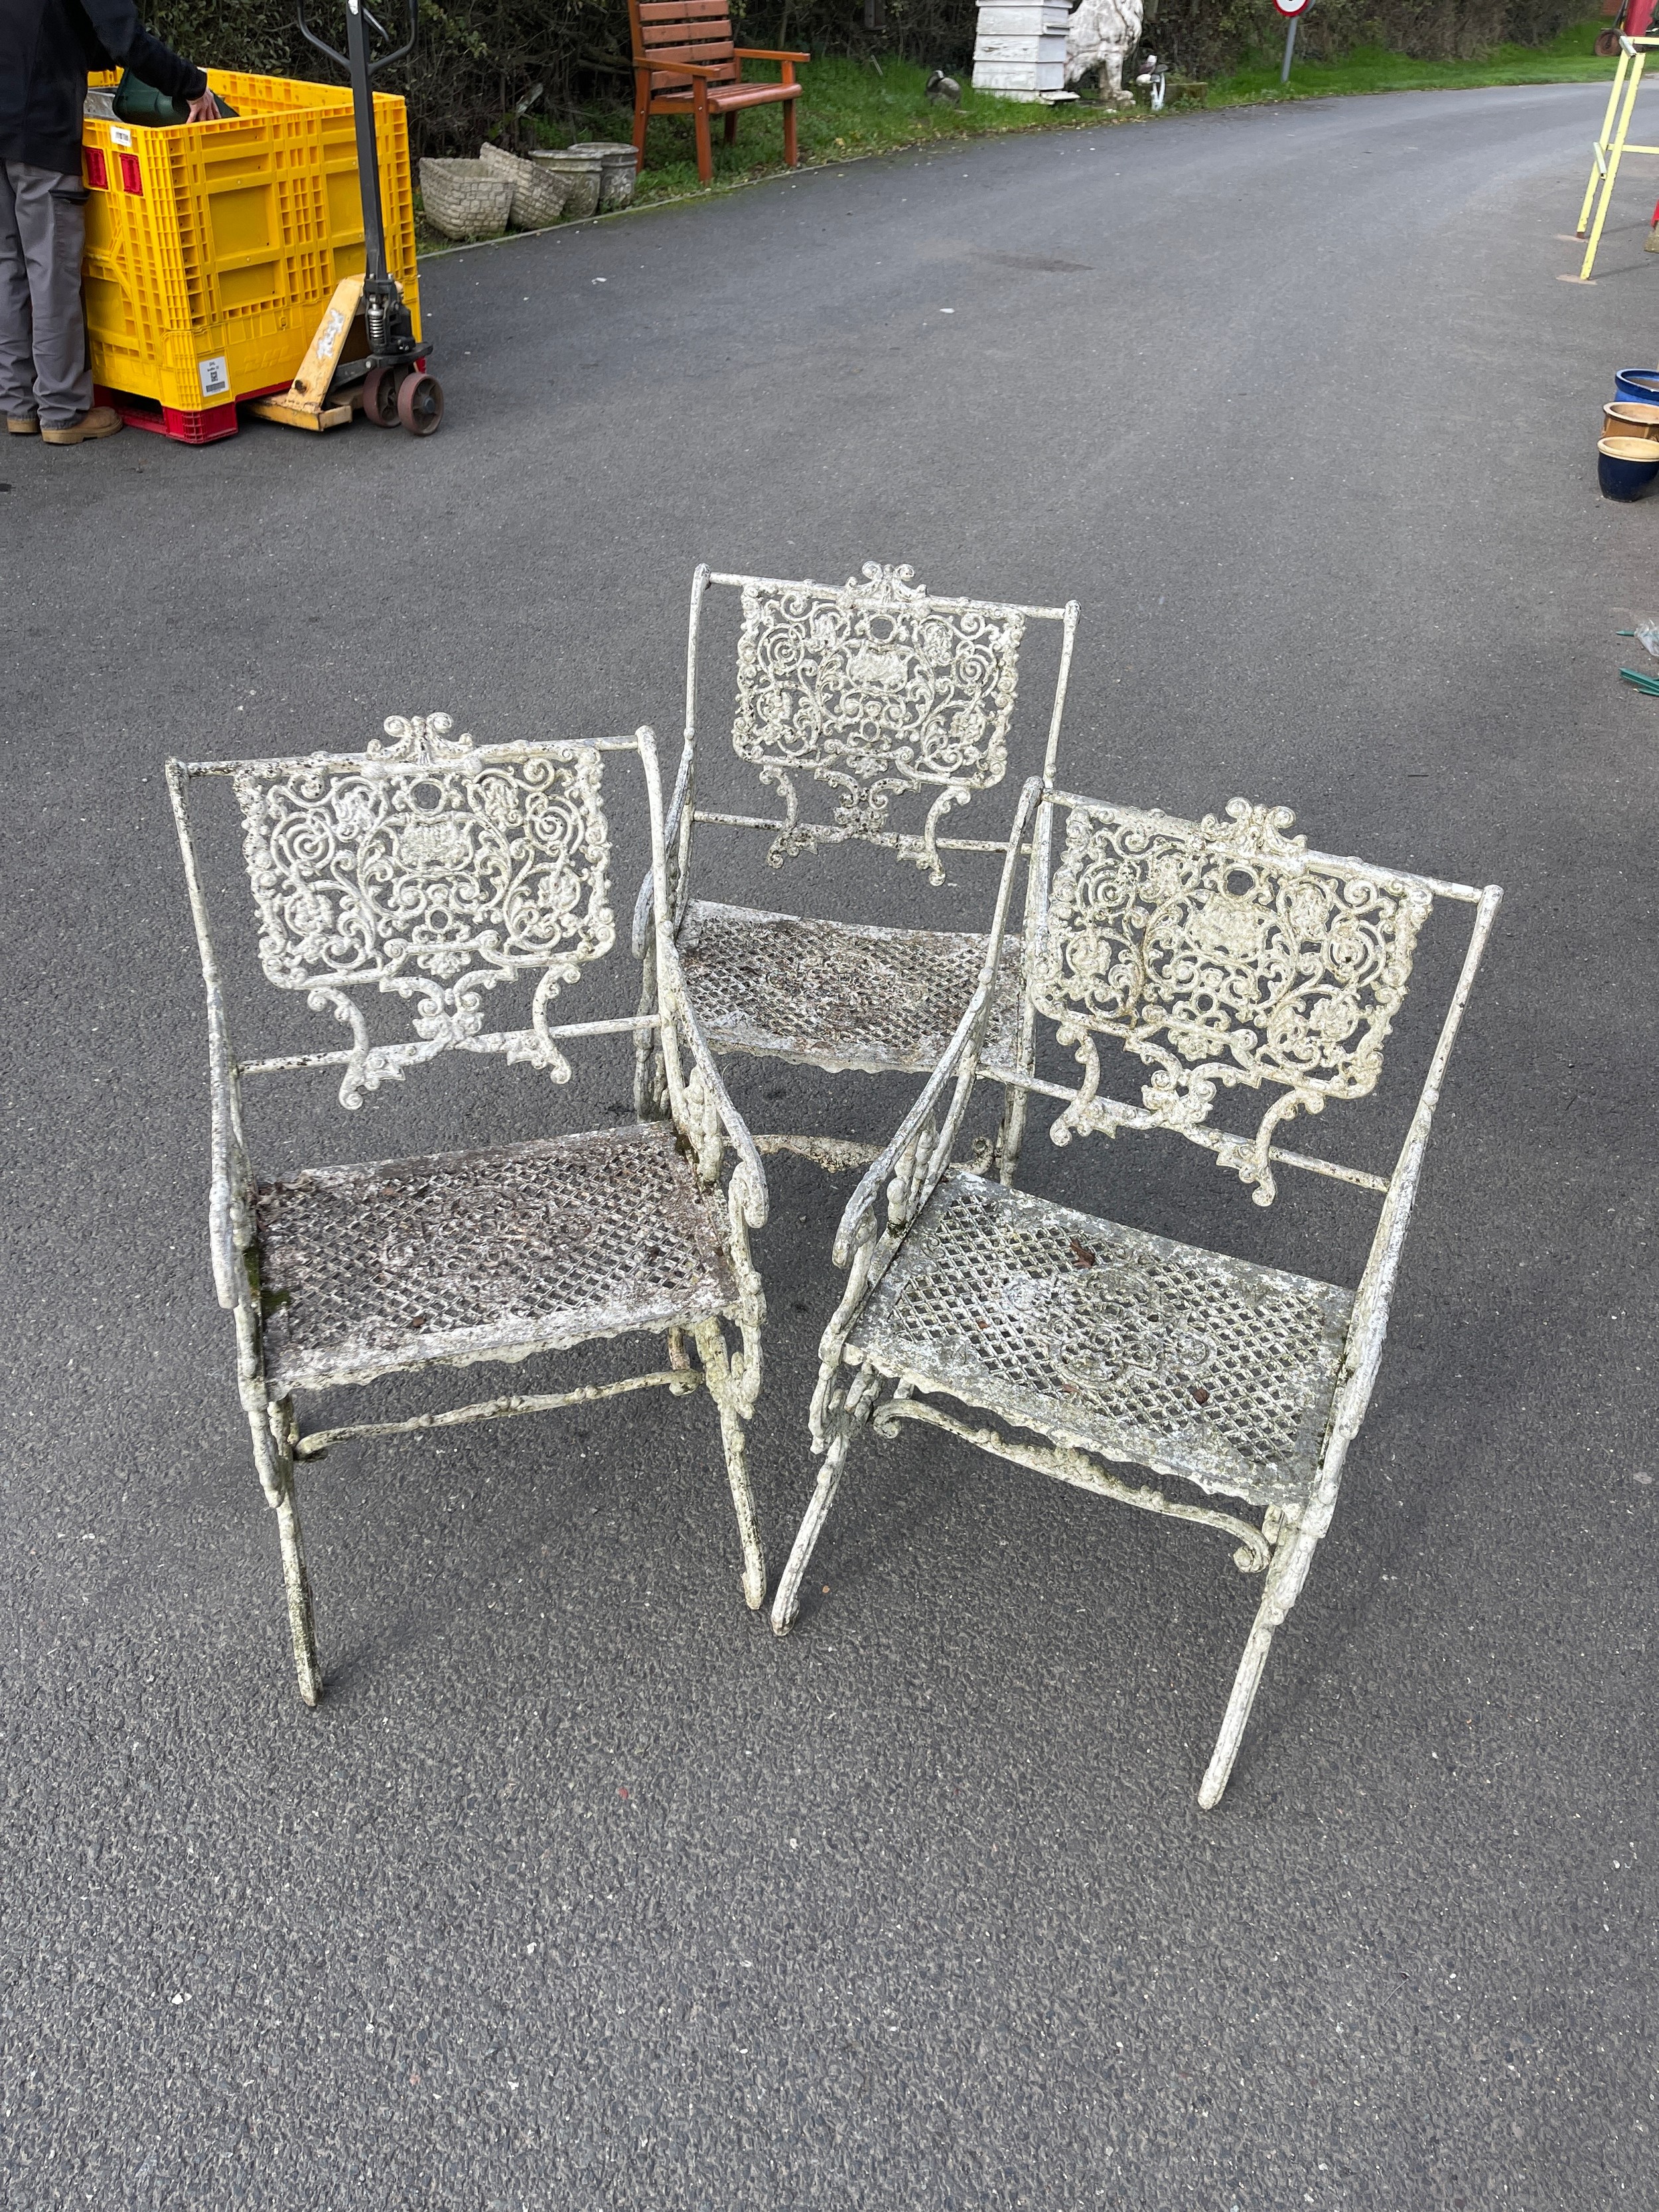 Three vintage iron garden chairs